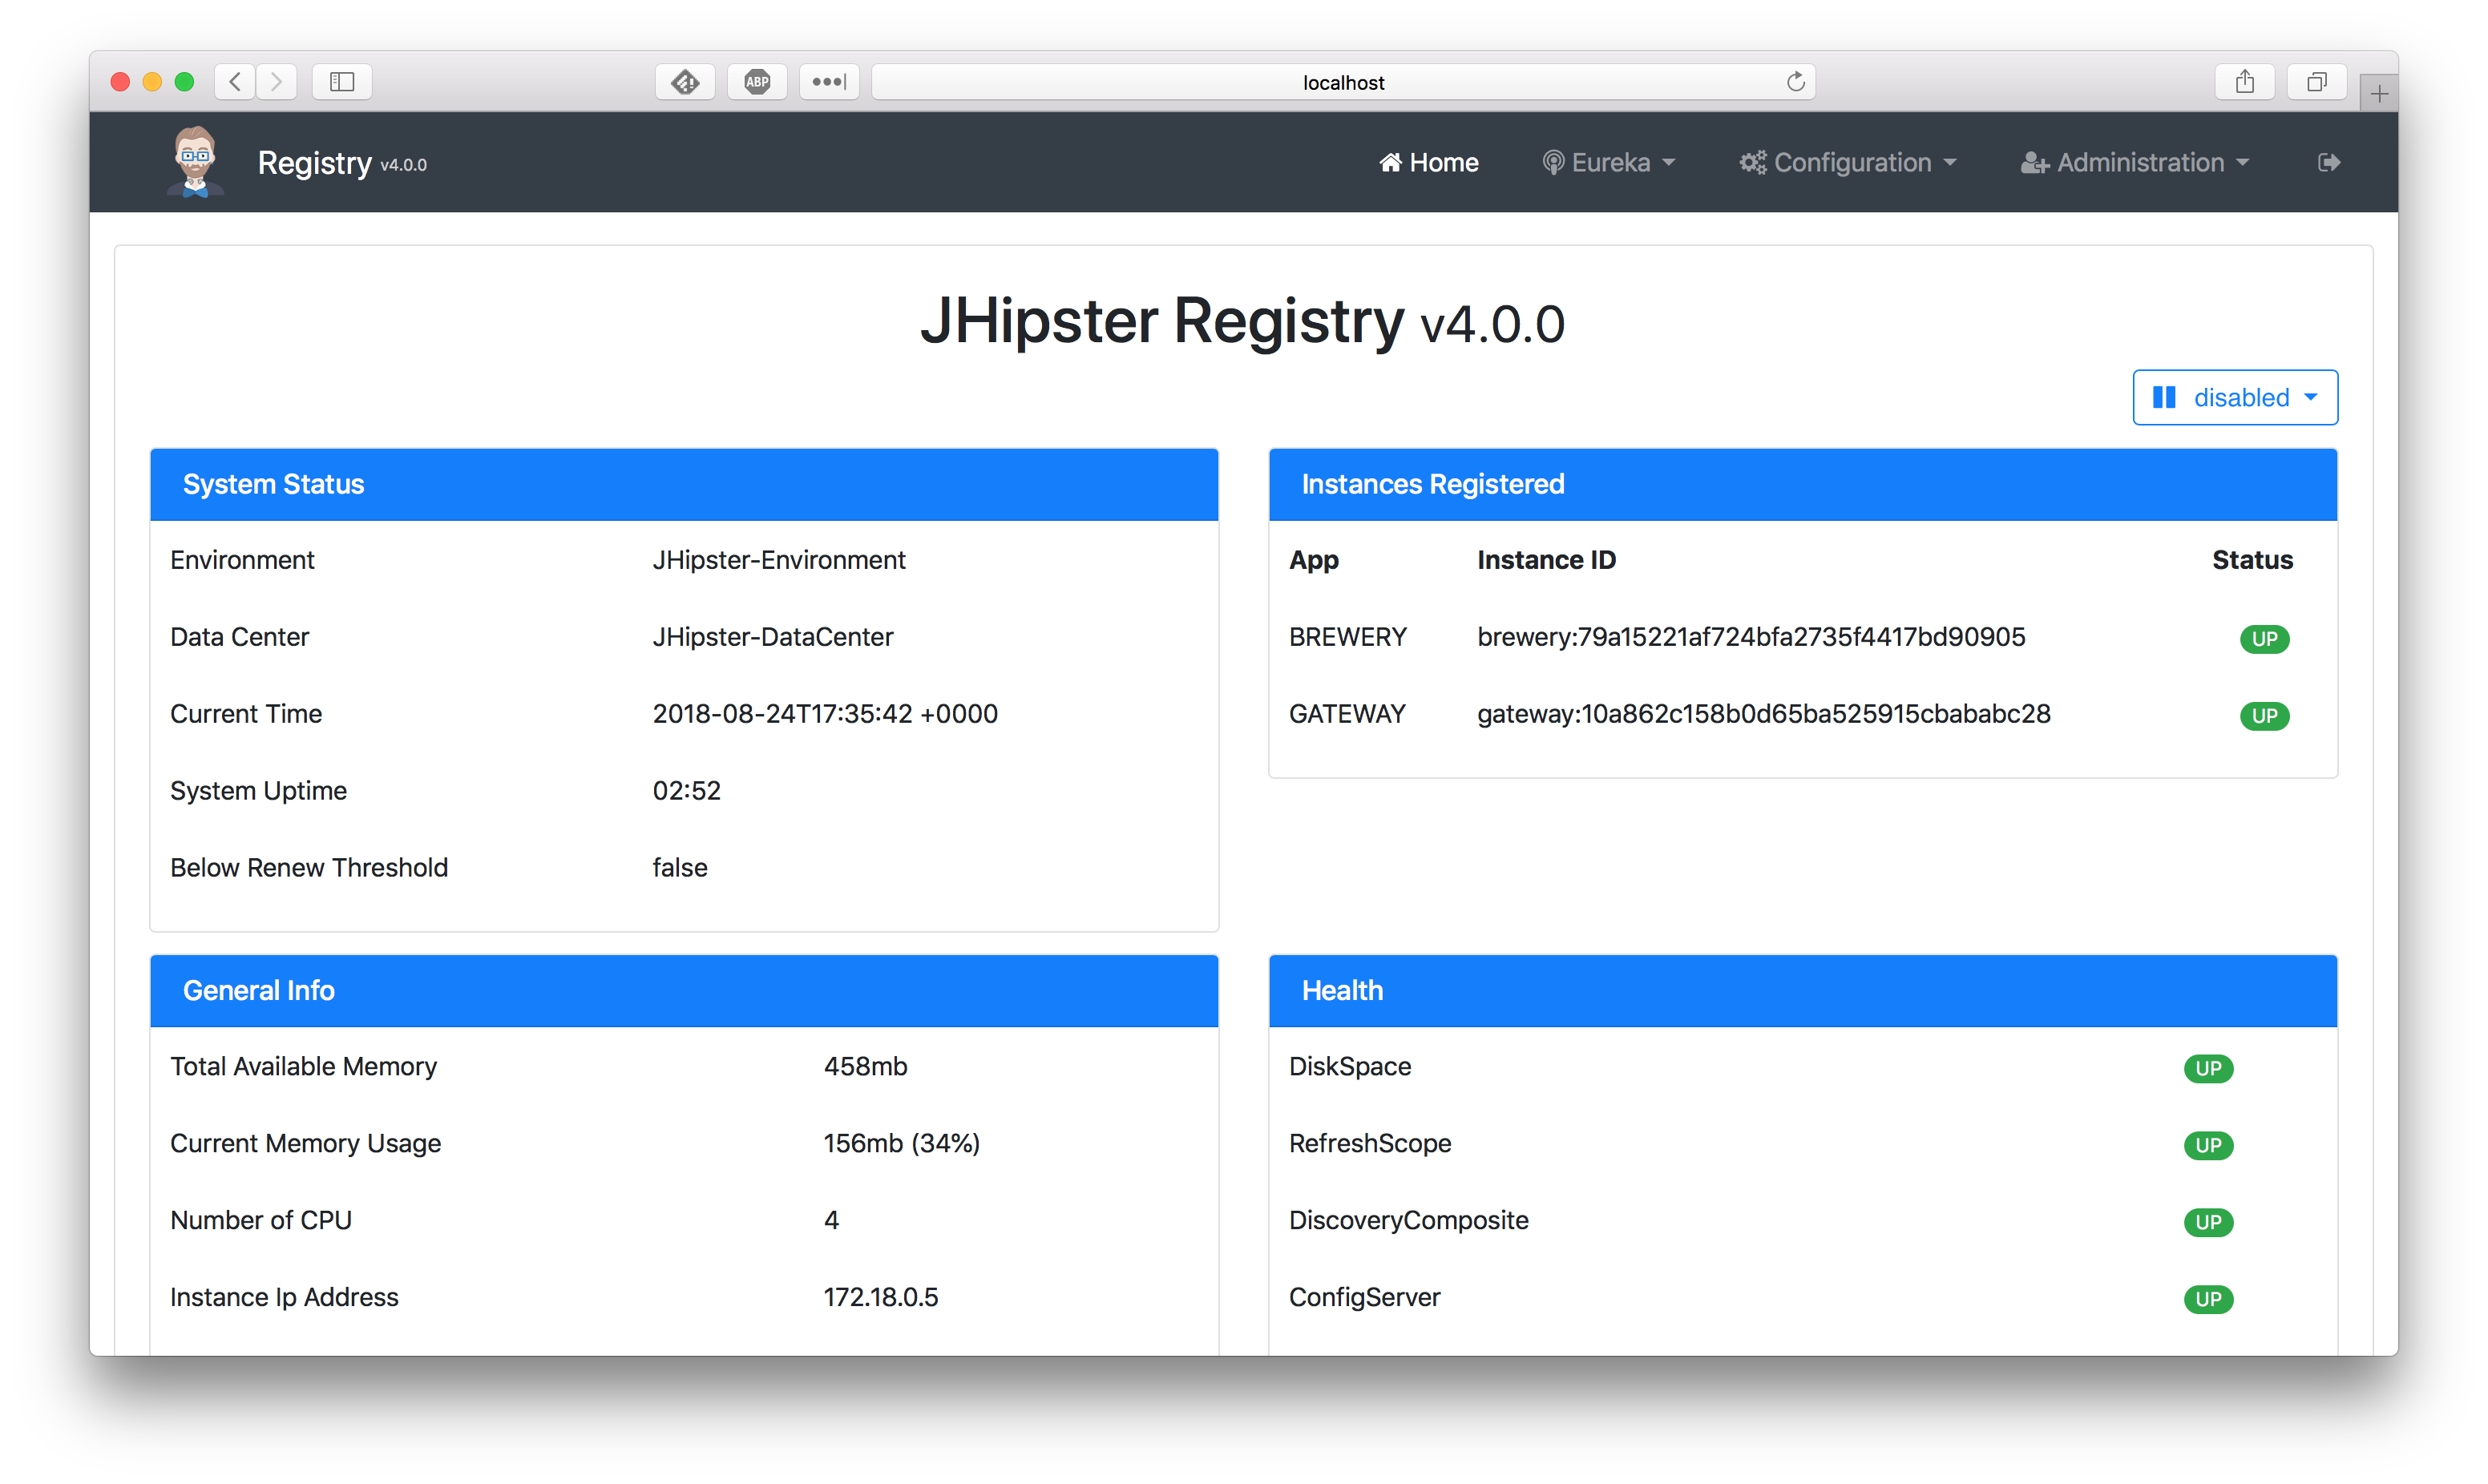 jhipster registry